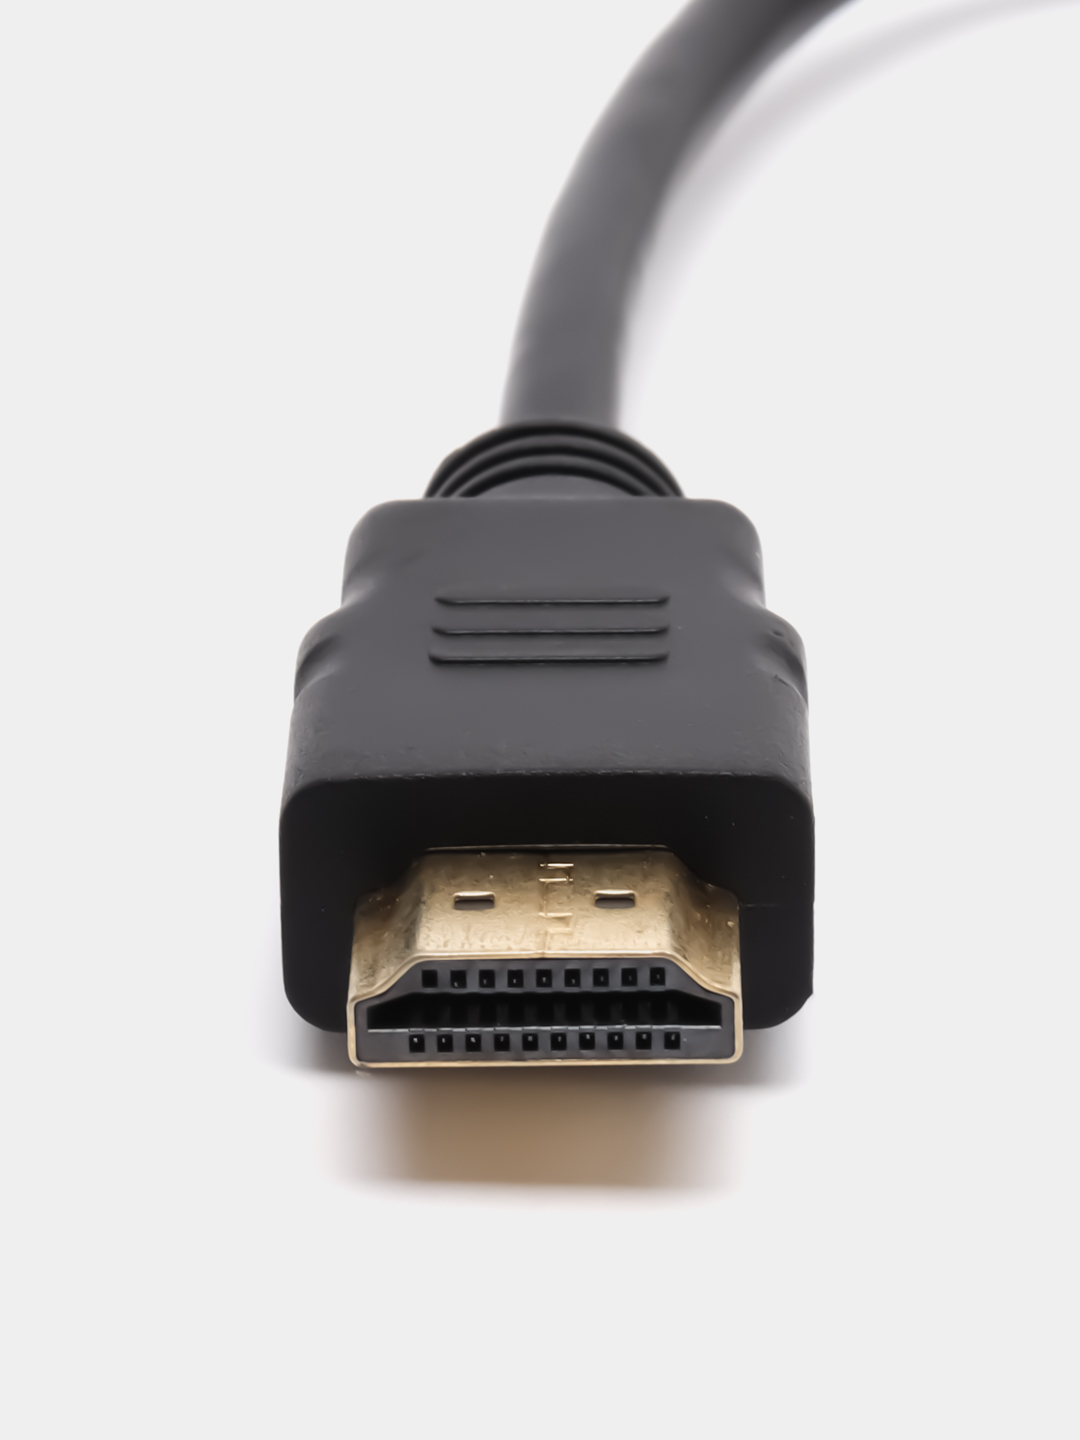 Кабели соединительные HDMI/RCA/SCART и другие